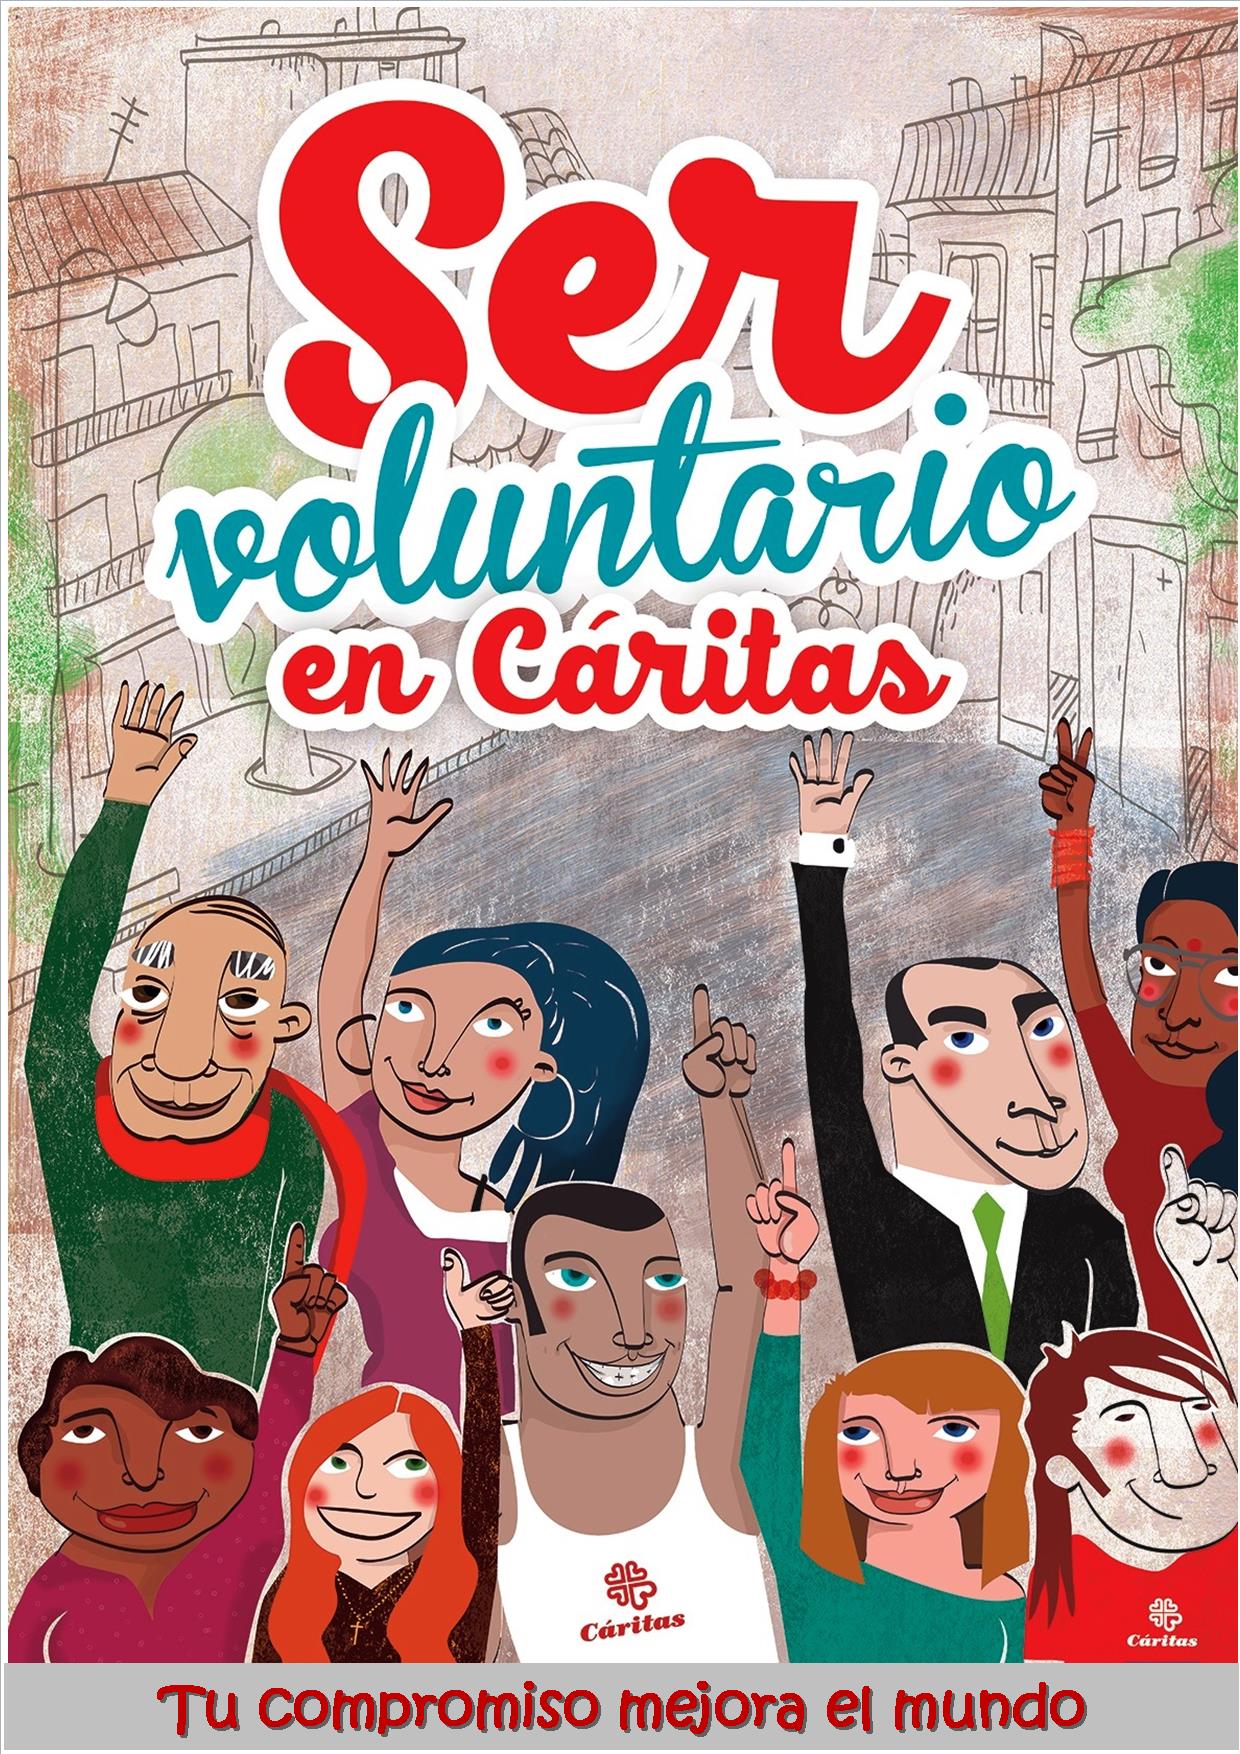 2.Poster voluntariado